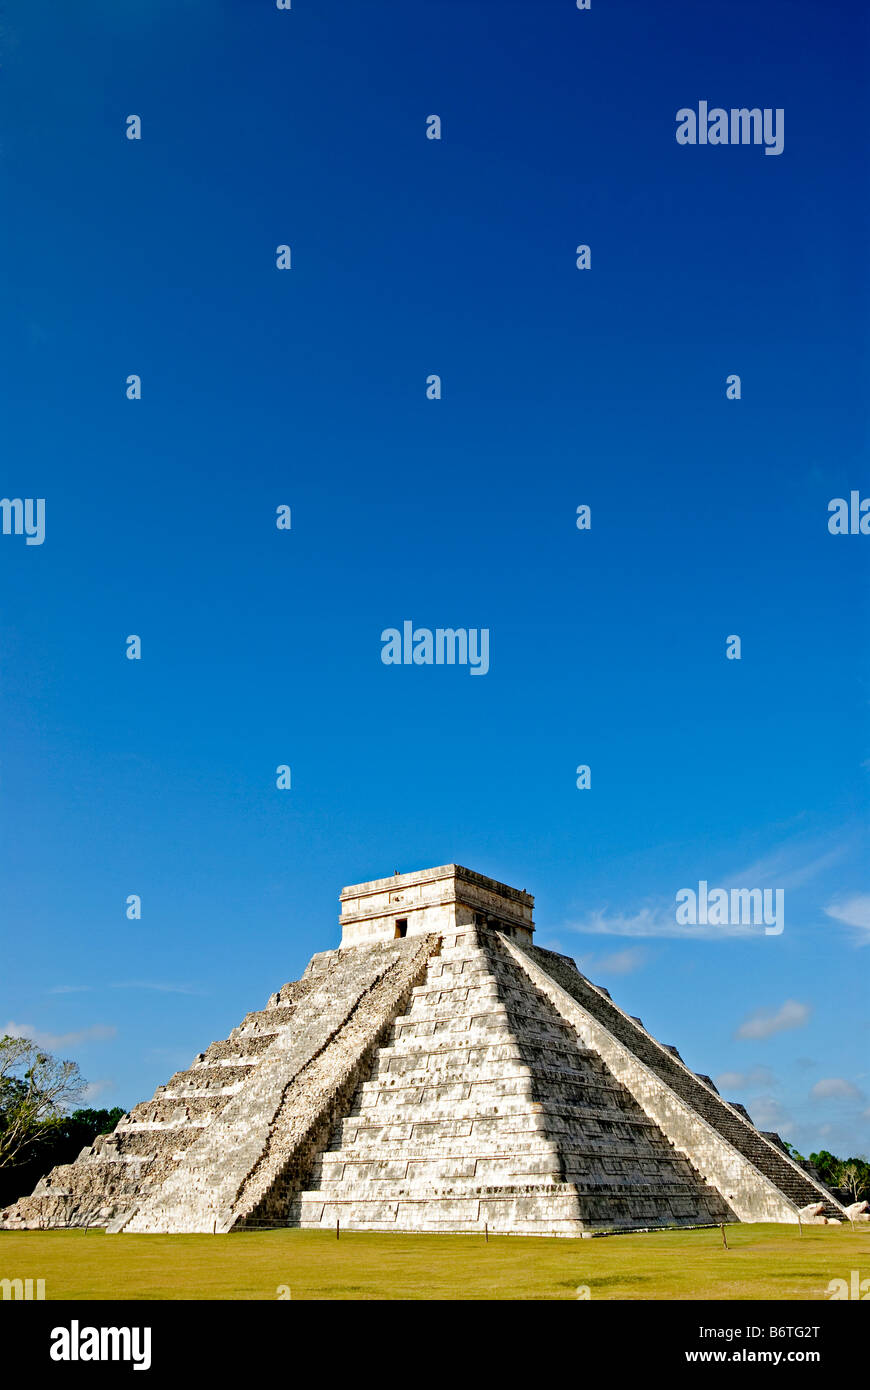 CHICHEN ITZA, Mexique - El Castillo (également connu sous le nom de Temple de Kuklcan) aux ruines mayas anciennes de Chichen Itza, Yucatan, Mexique 081216093650 1937x.tif. Chichen Itza, situé sur la péninsule du Yucatan au Mexique, est un site archéologique important présentant la riche histoire et les connaissances scientifiques avancées de la civilisation maya antique. Il est plus connu pour la Pyramide Kukulkan, ou « El Castillo », une structure à quatre côtés avec 91 marches de chaque côté, culminant en une seule étape au sommet pour représenter les 365 jours de l'année solaire. Banque D'Images